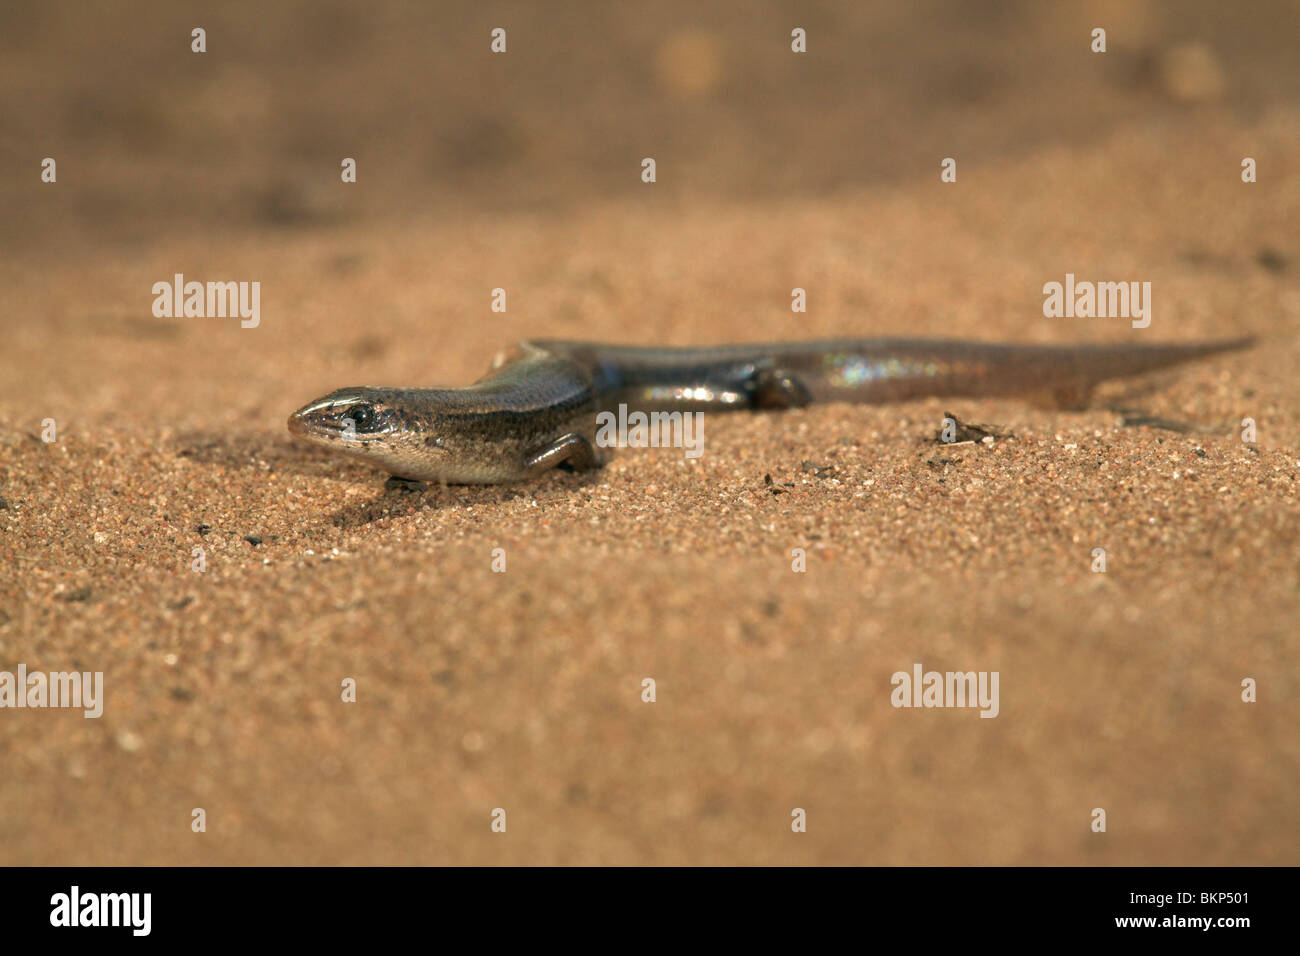 Foto van een Wahlberg's Slangenoog skink op zand; photo of a Wahlberg's snake-eyed skink on sand; Stock Photo